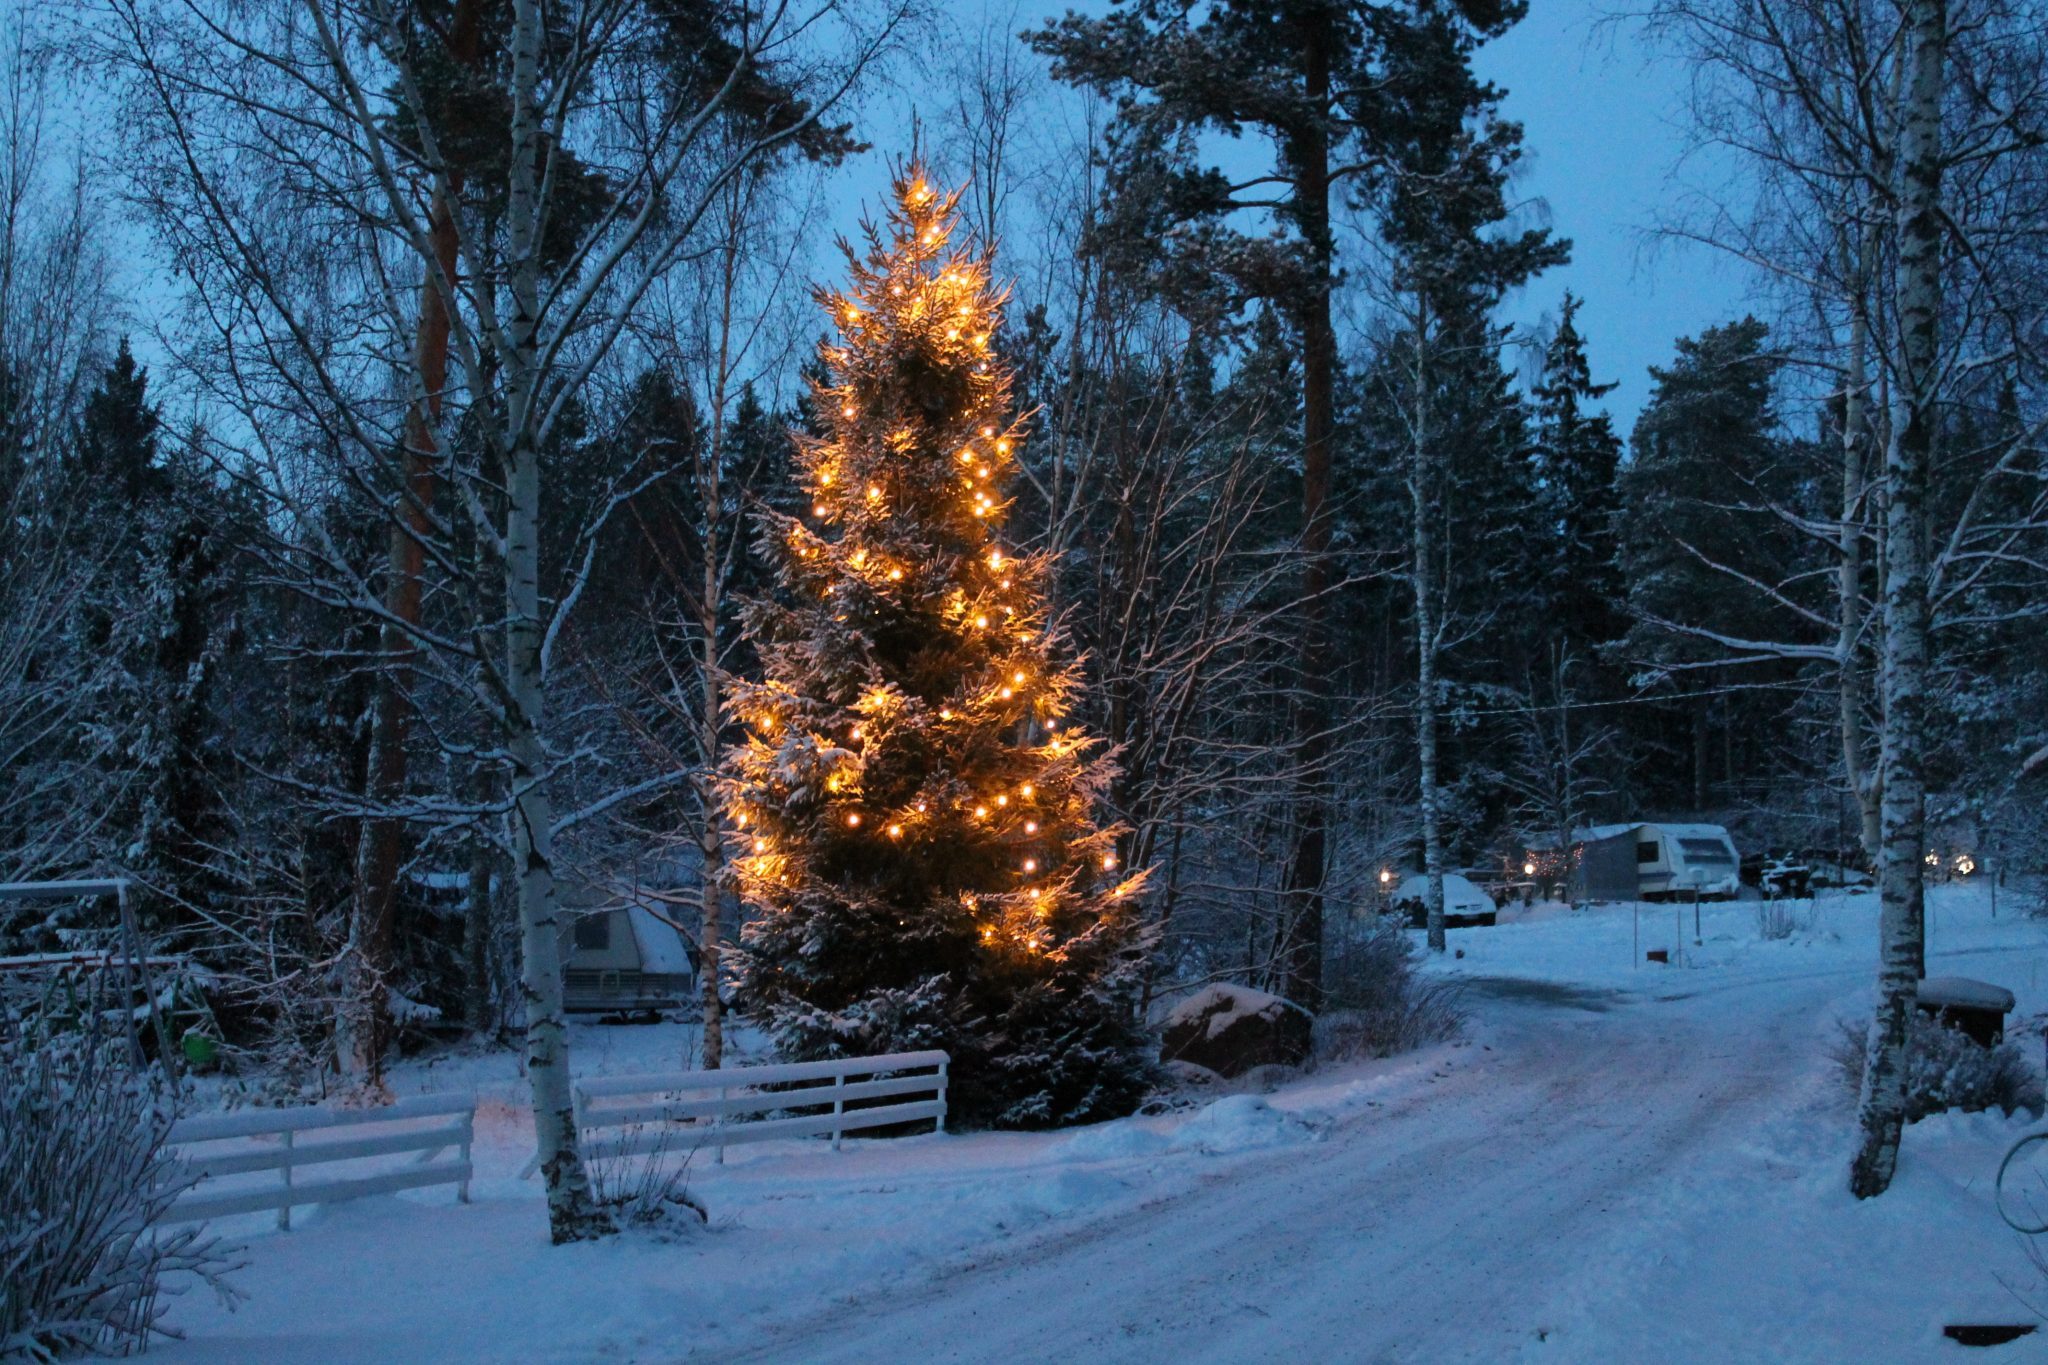 The winter in Kesäniemi